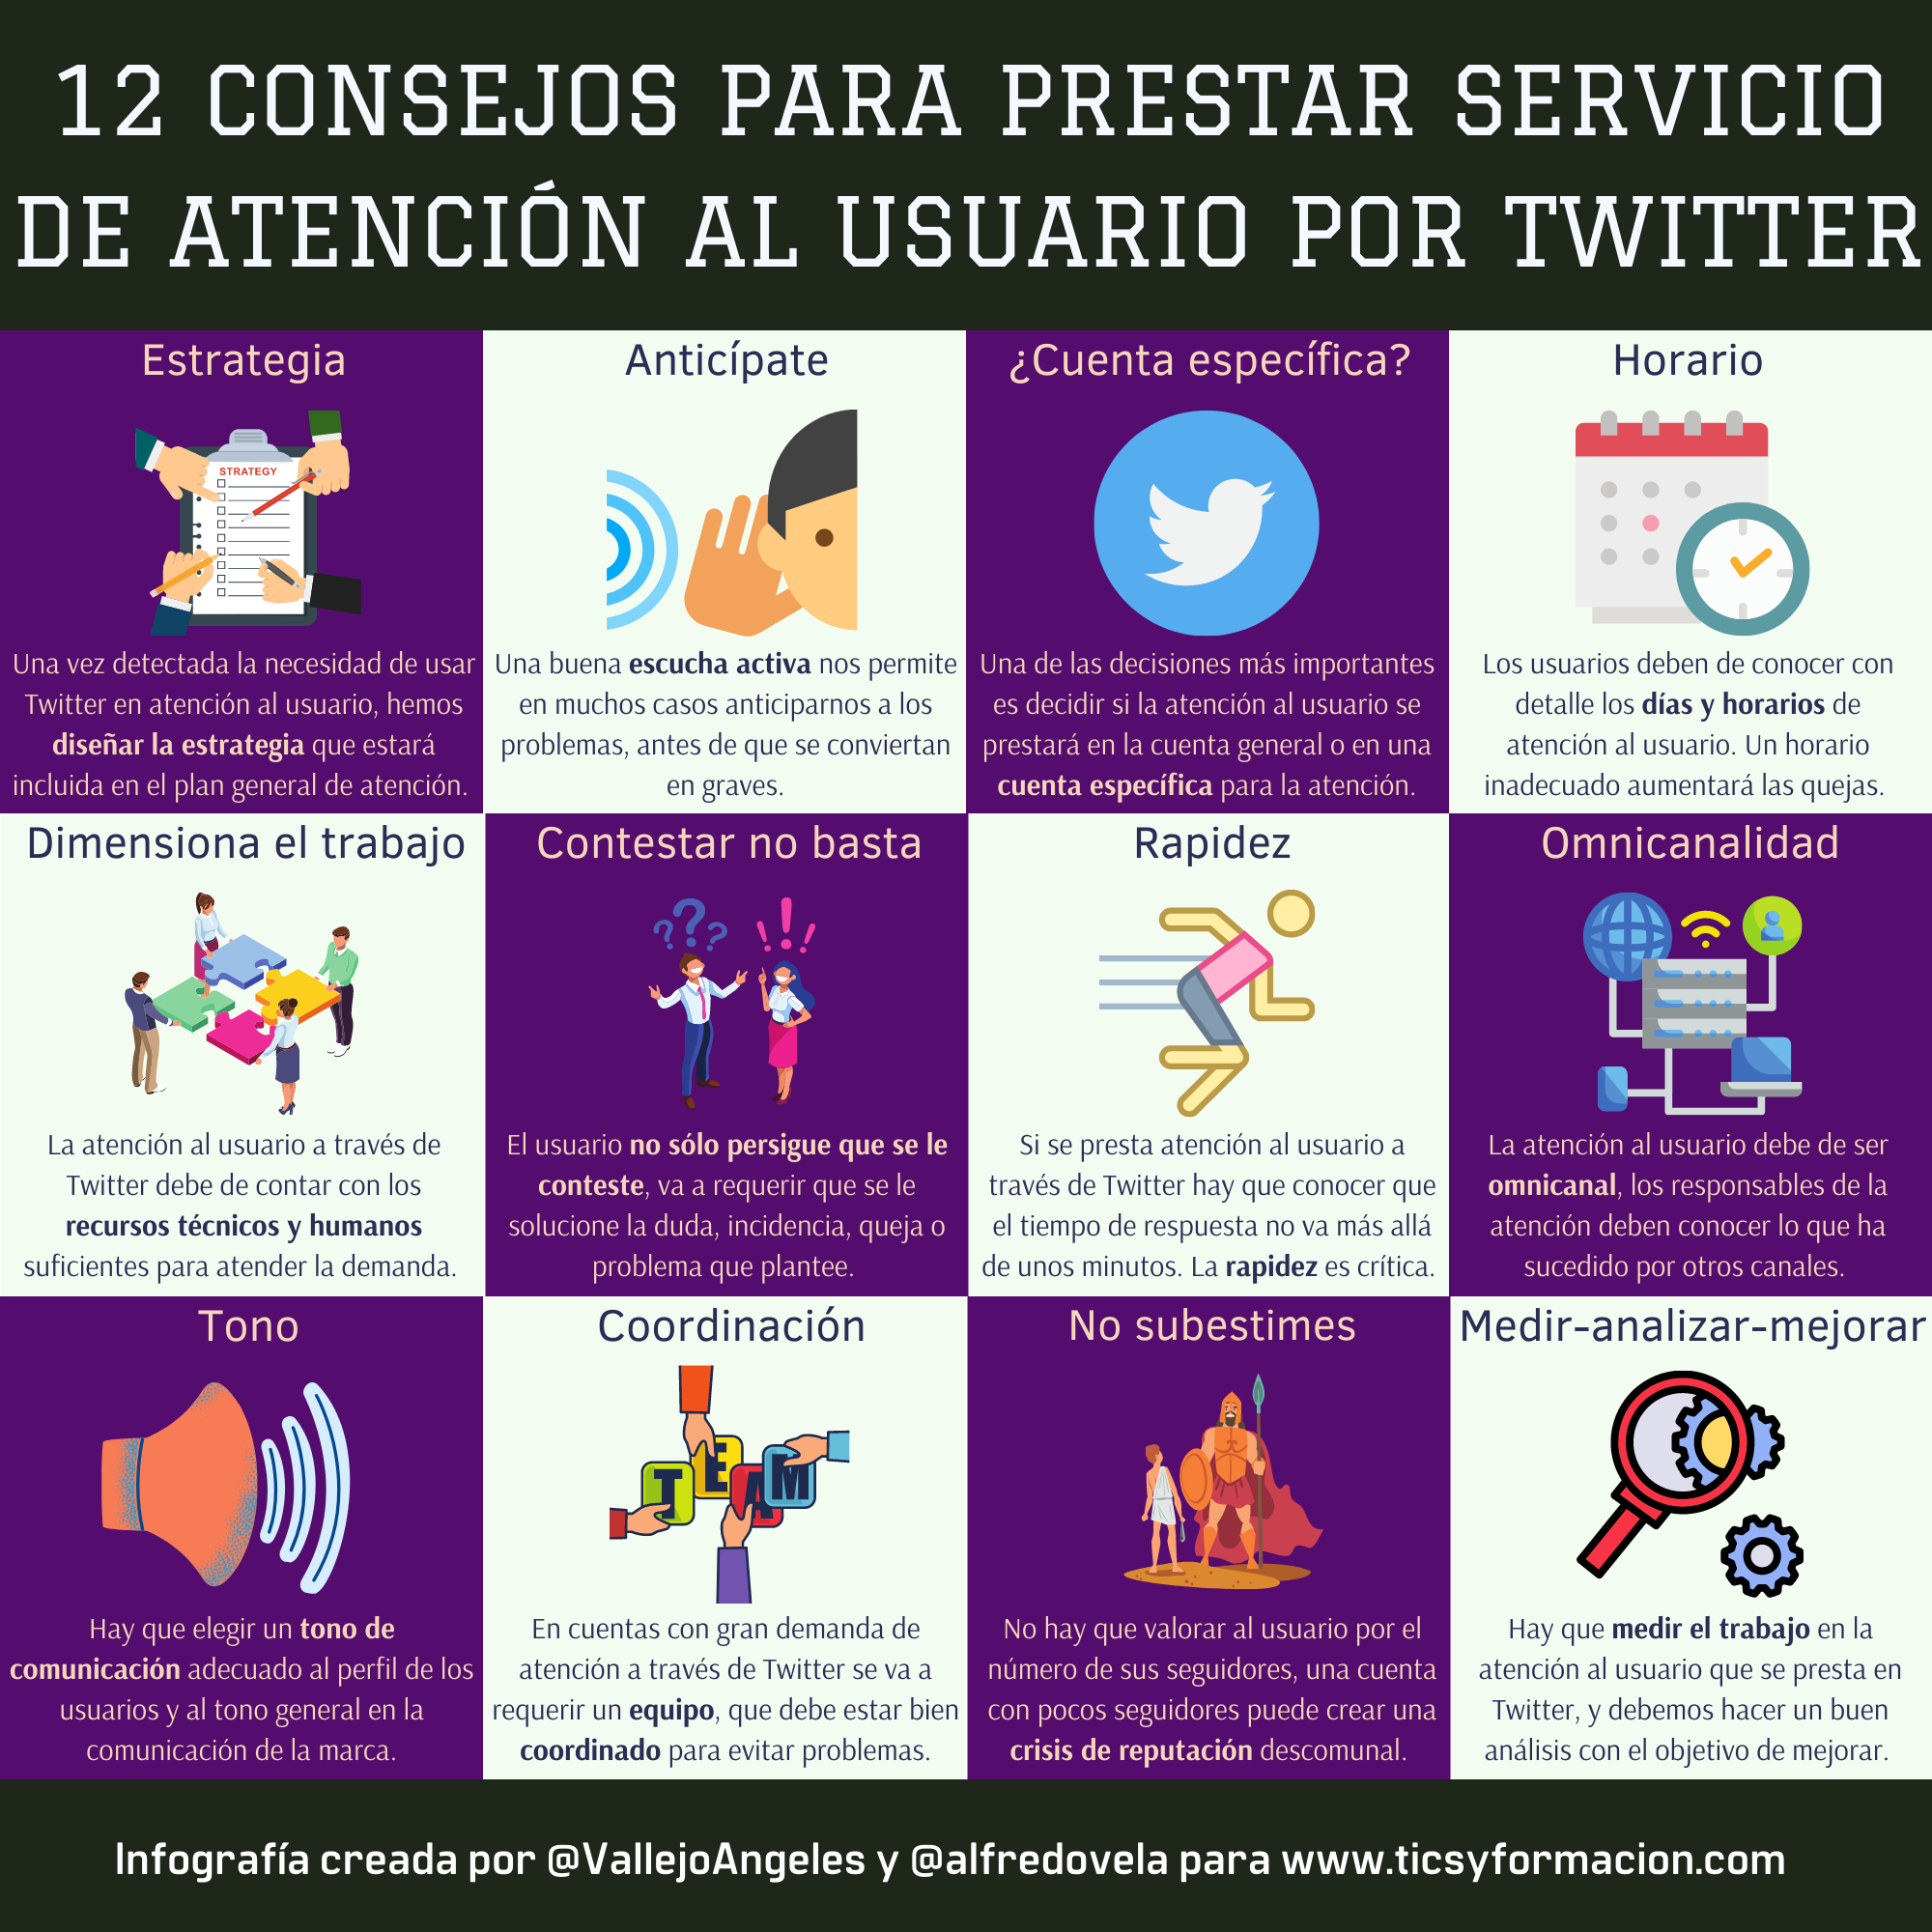 12 consejos para prestar servicio de atención al usuario por Twitter #infografia #socialmedia #atenciónalusuario